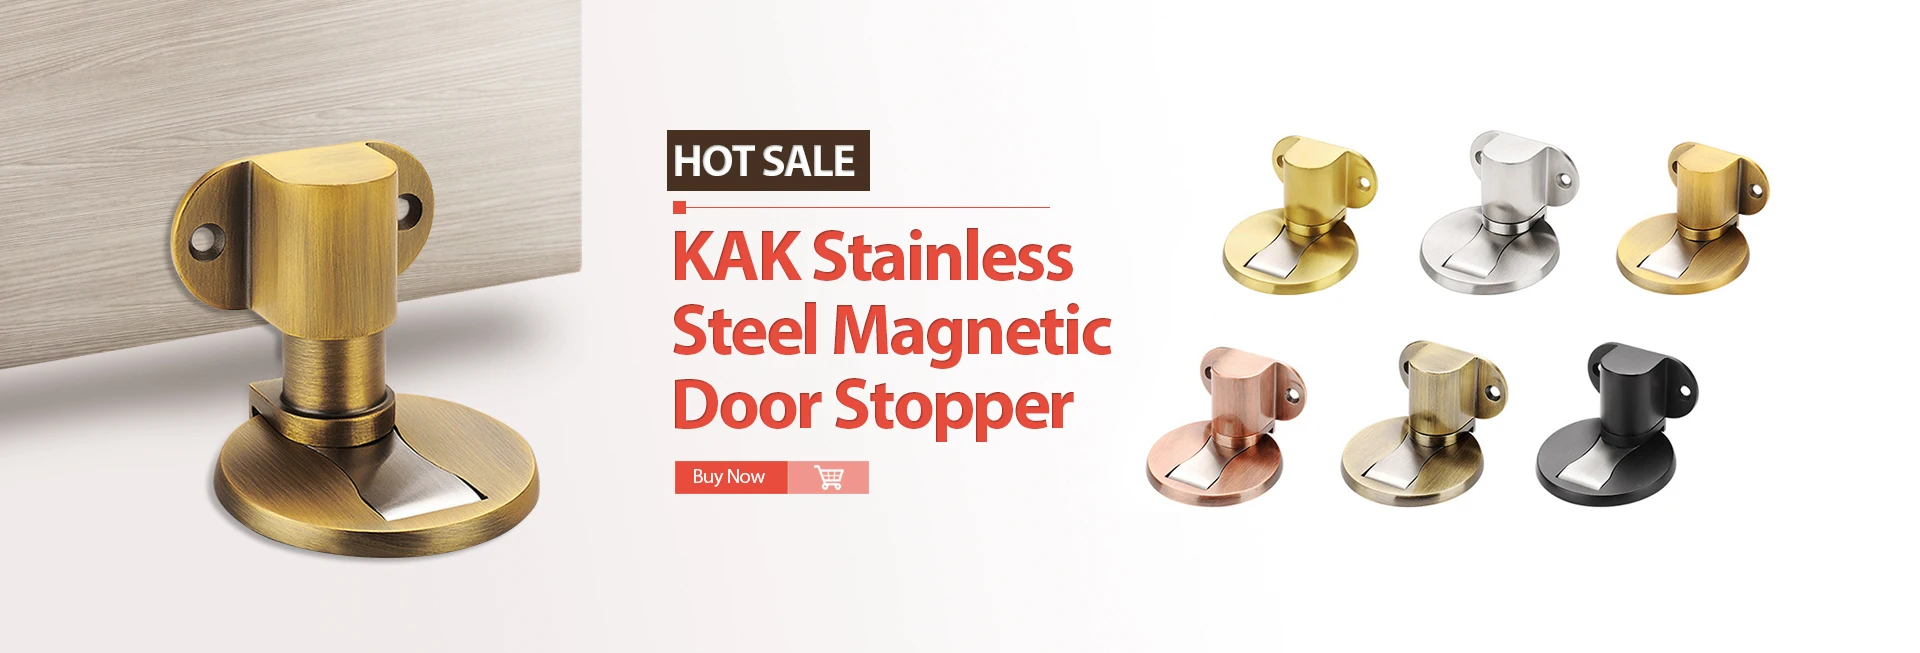 KAK 100N 10kg Cabinet Hinges Furniture Gas Spring Kitchen Cupboard Door Lift Support Lid Stays Soft Close Open Cabient Hardware